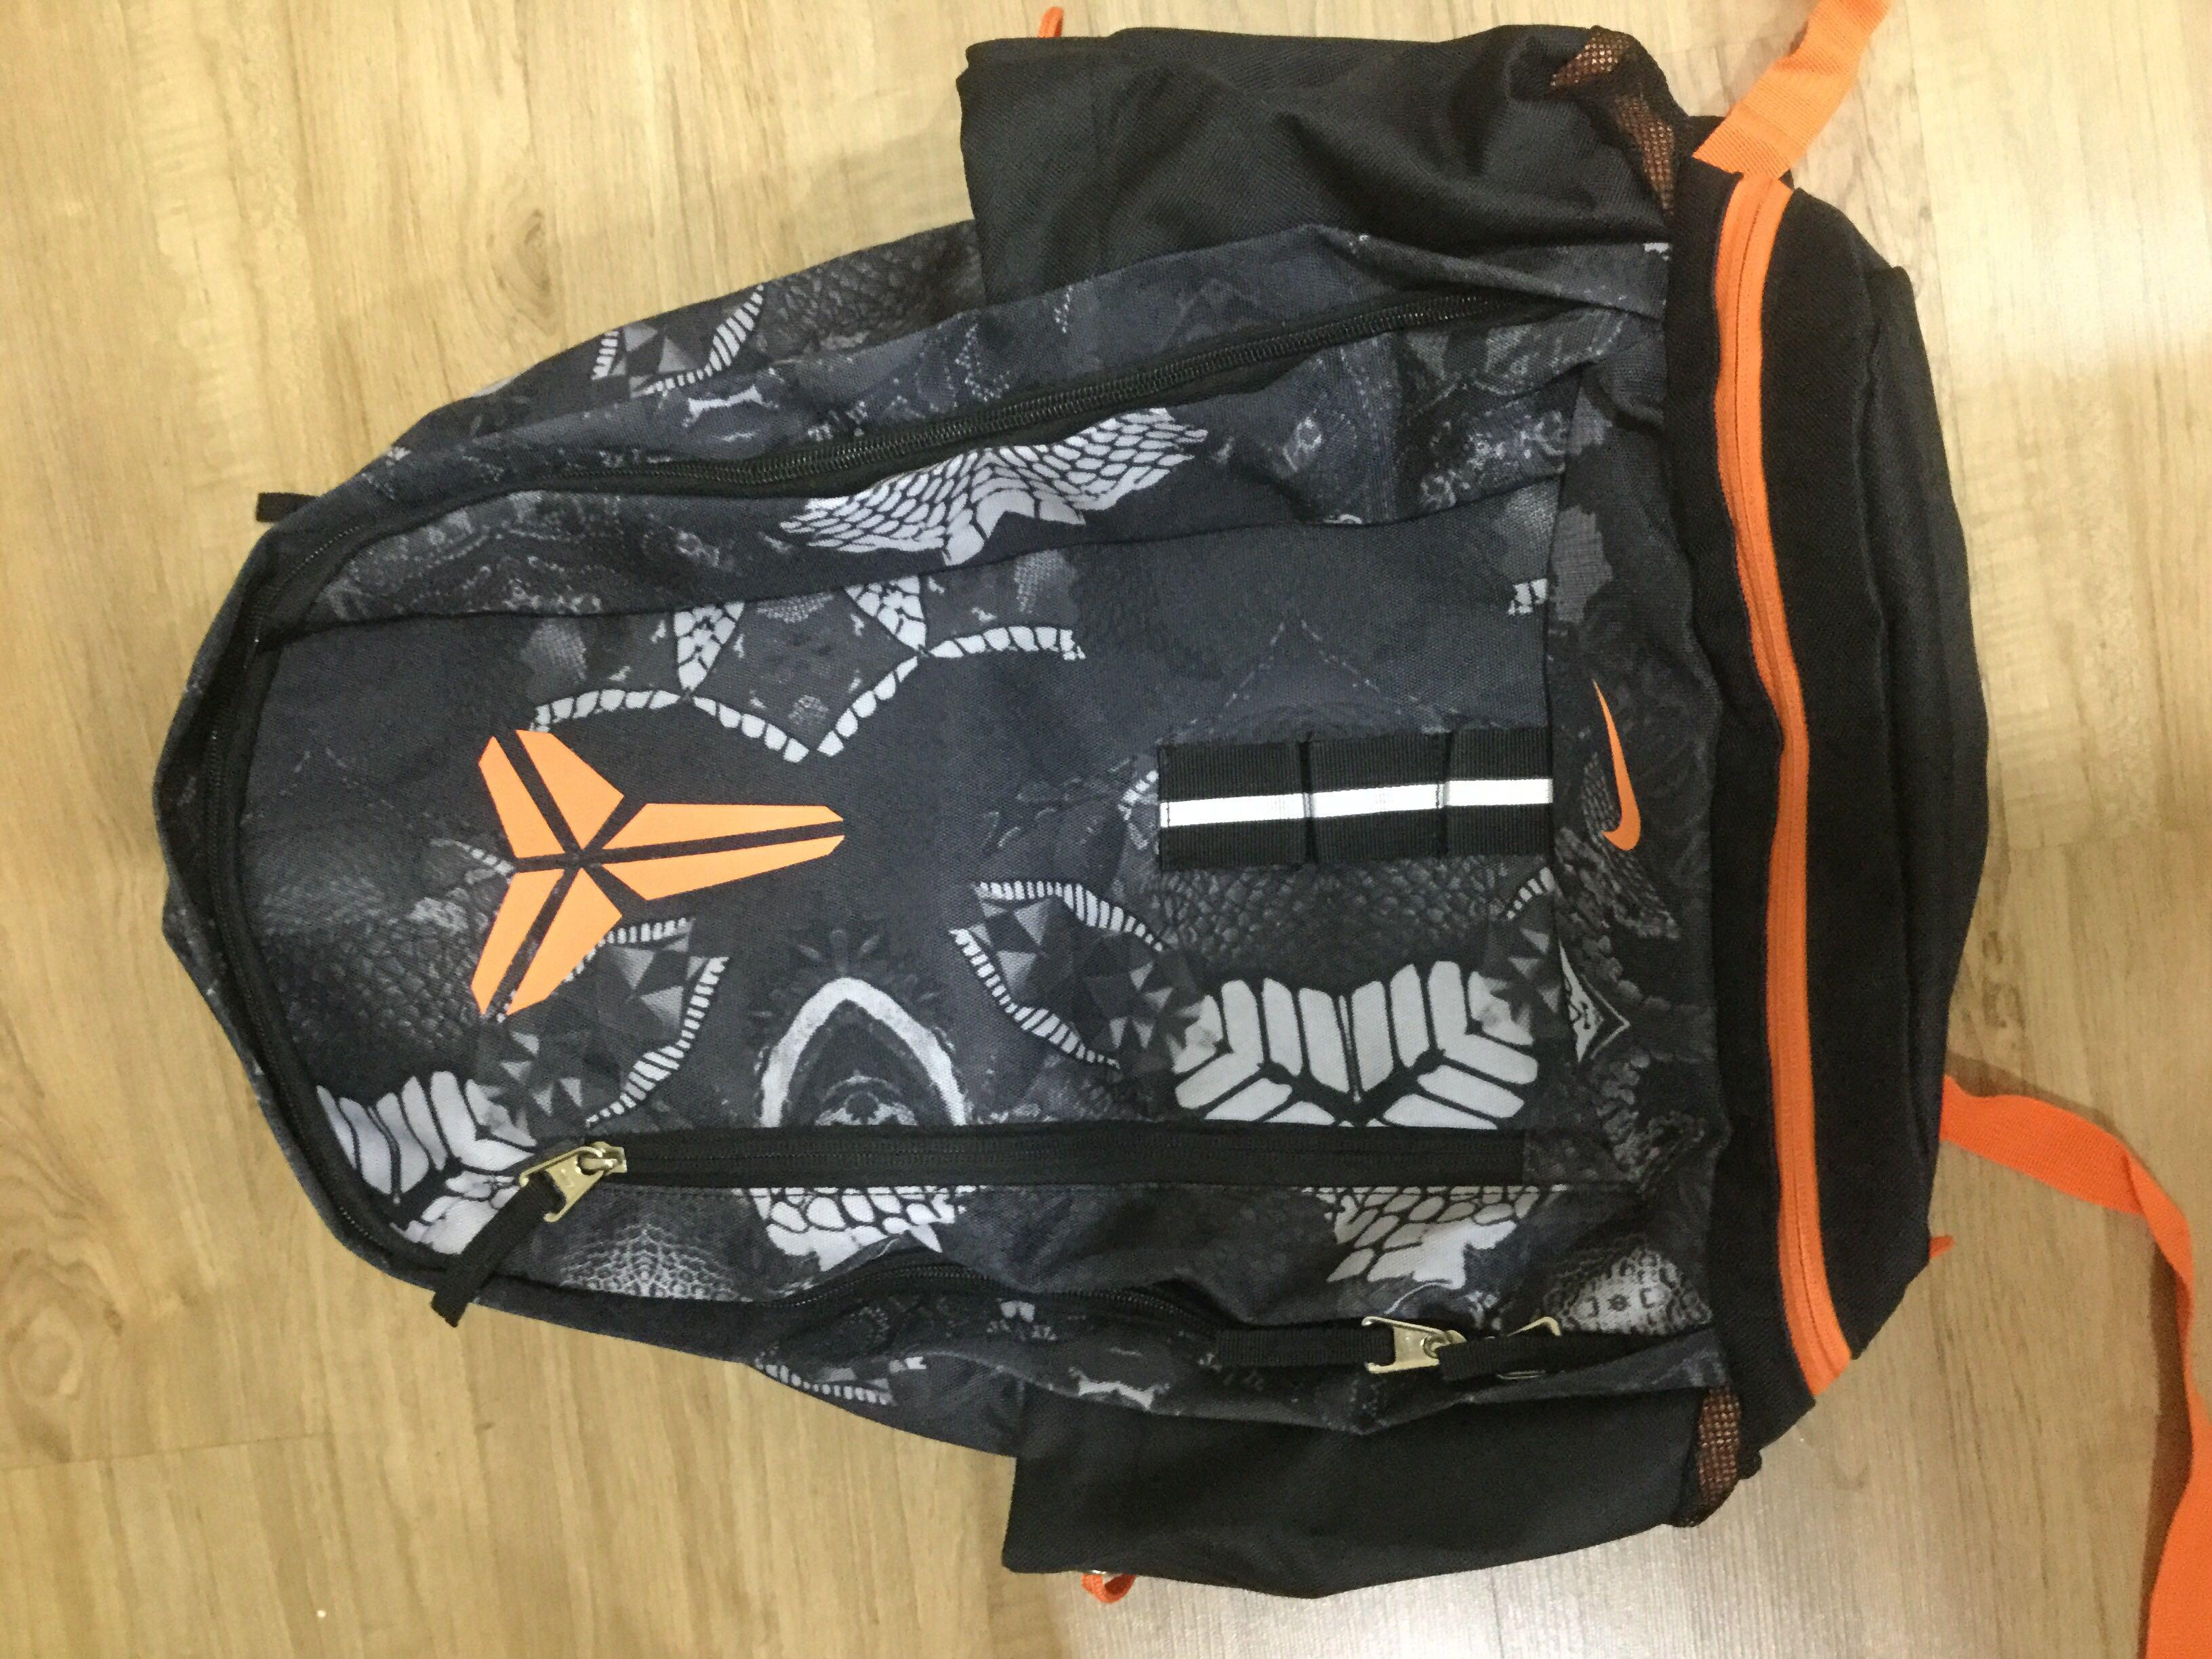 kobe bryant backpack